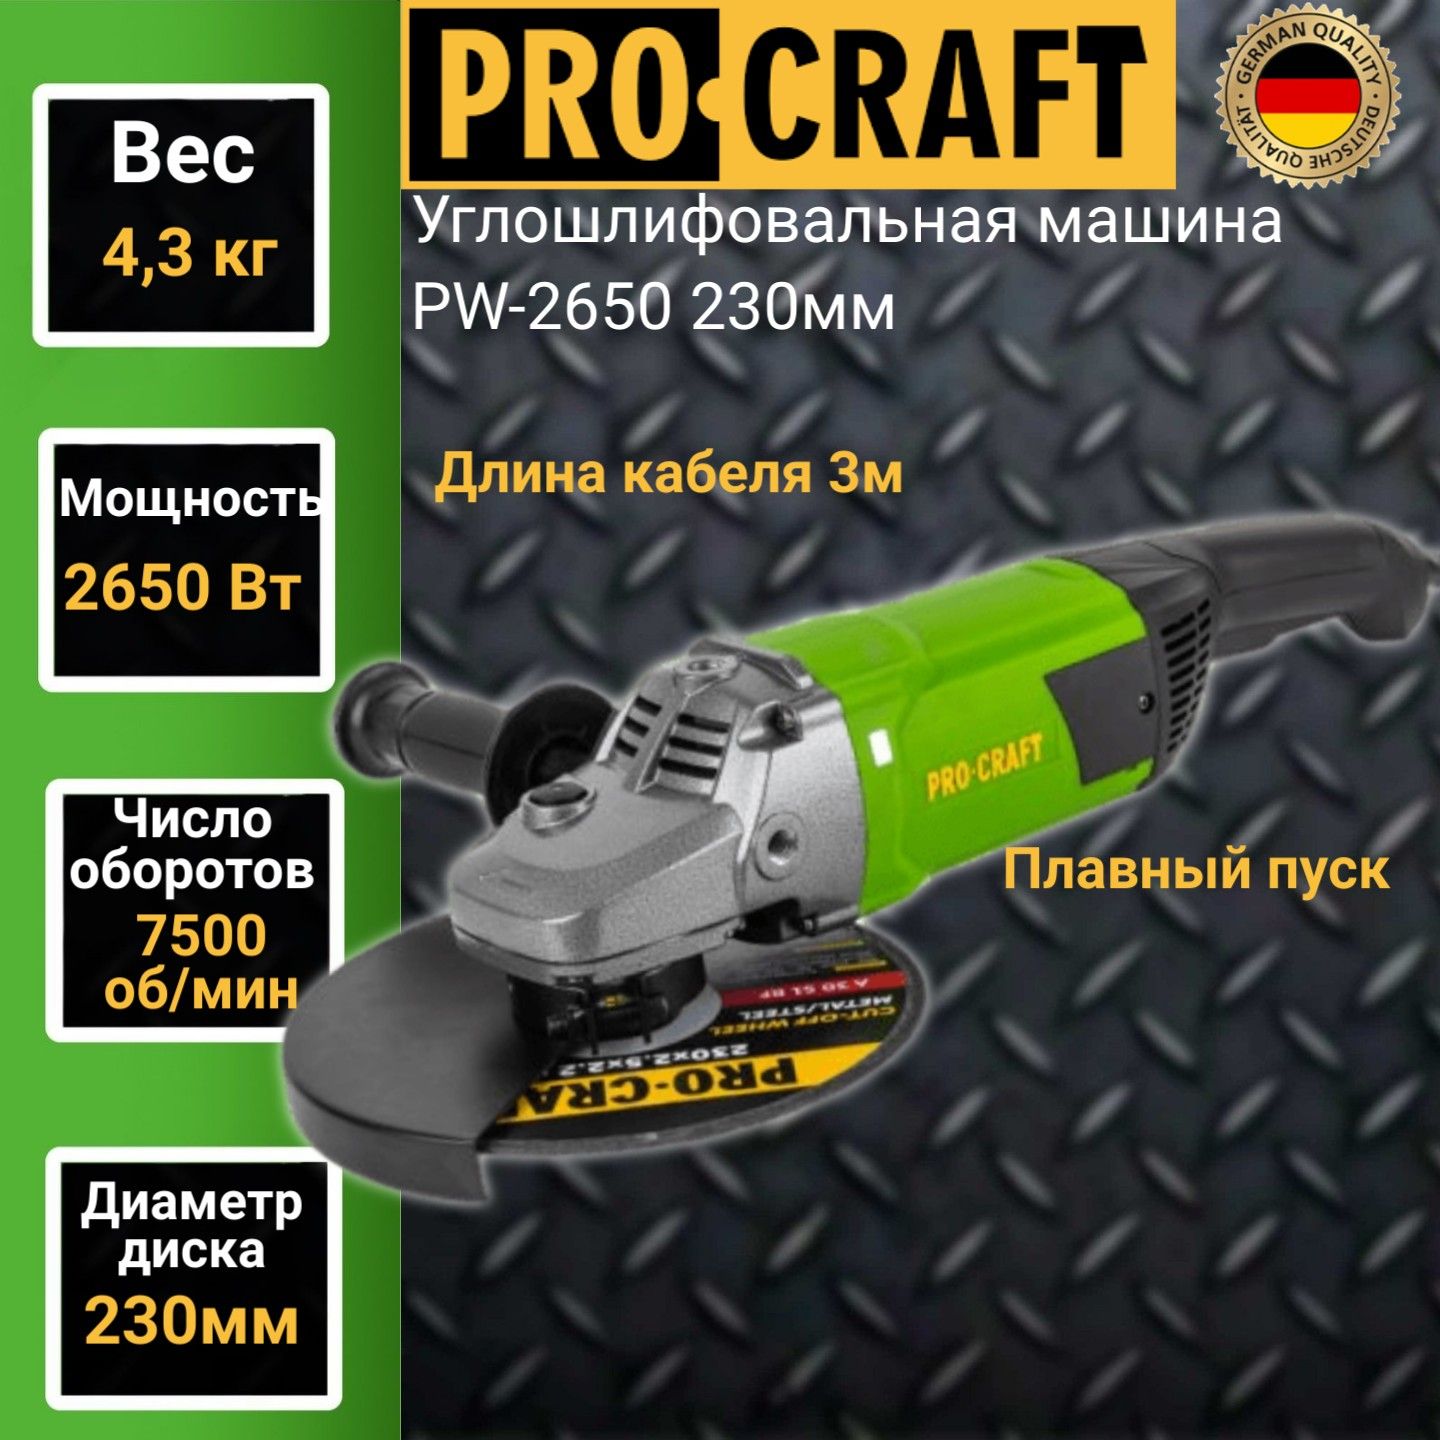 Углошлифовальная машина болгарка Procraft PW 2650, 230мм круг, 2650Вт, 7500об/мин универсальная заточная машина procraft ms 350 65вт 6700об мин